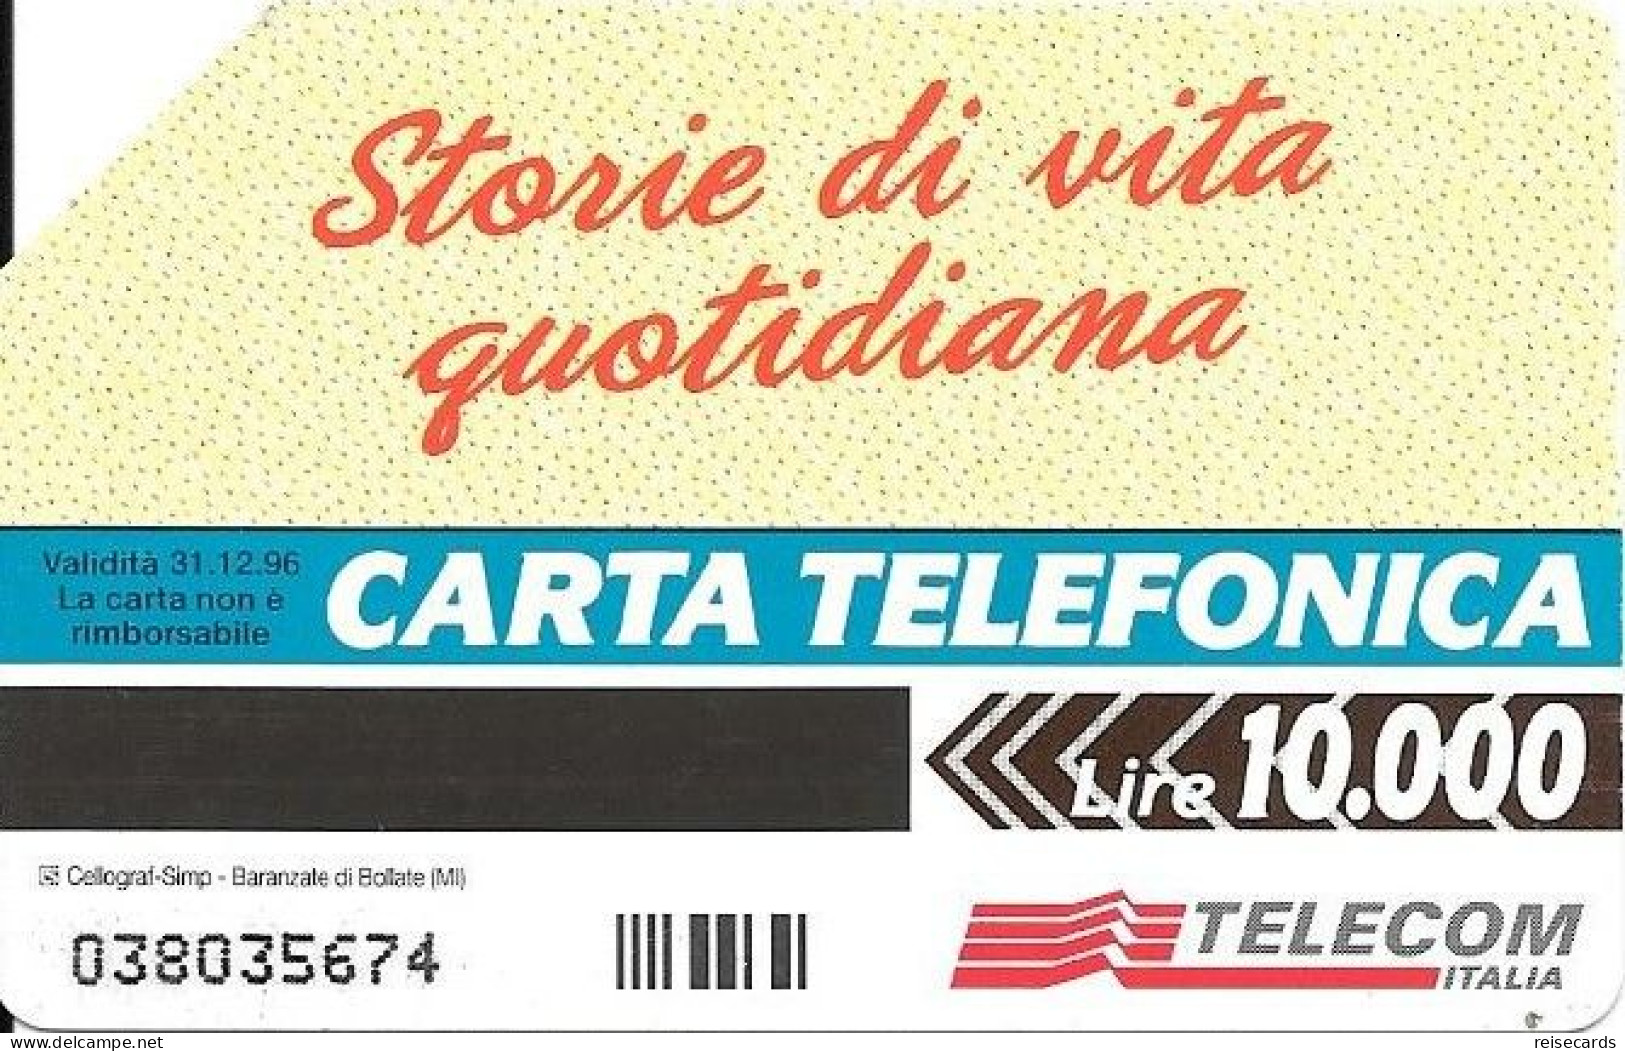 Italy: Telecom Italia - Storie Di Vita Quotidiana - Pubbliche Pubblicitarie